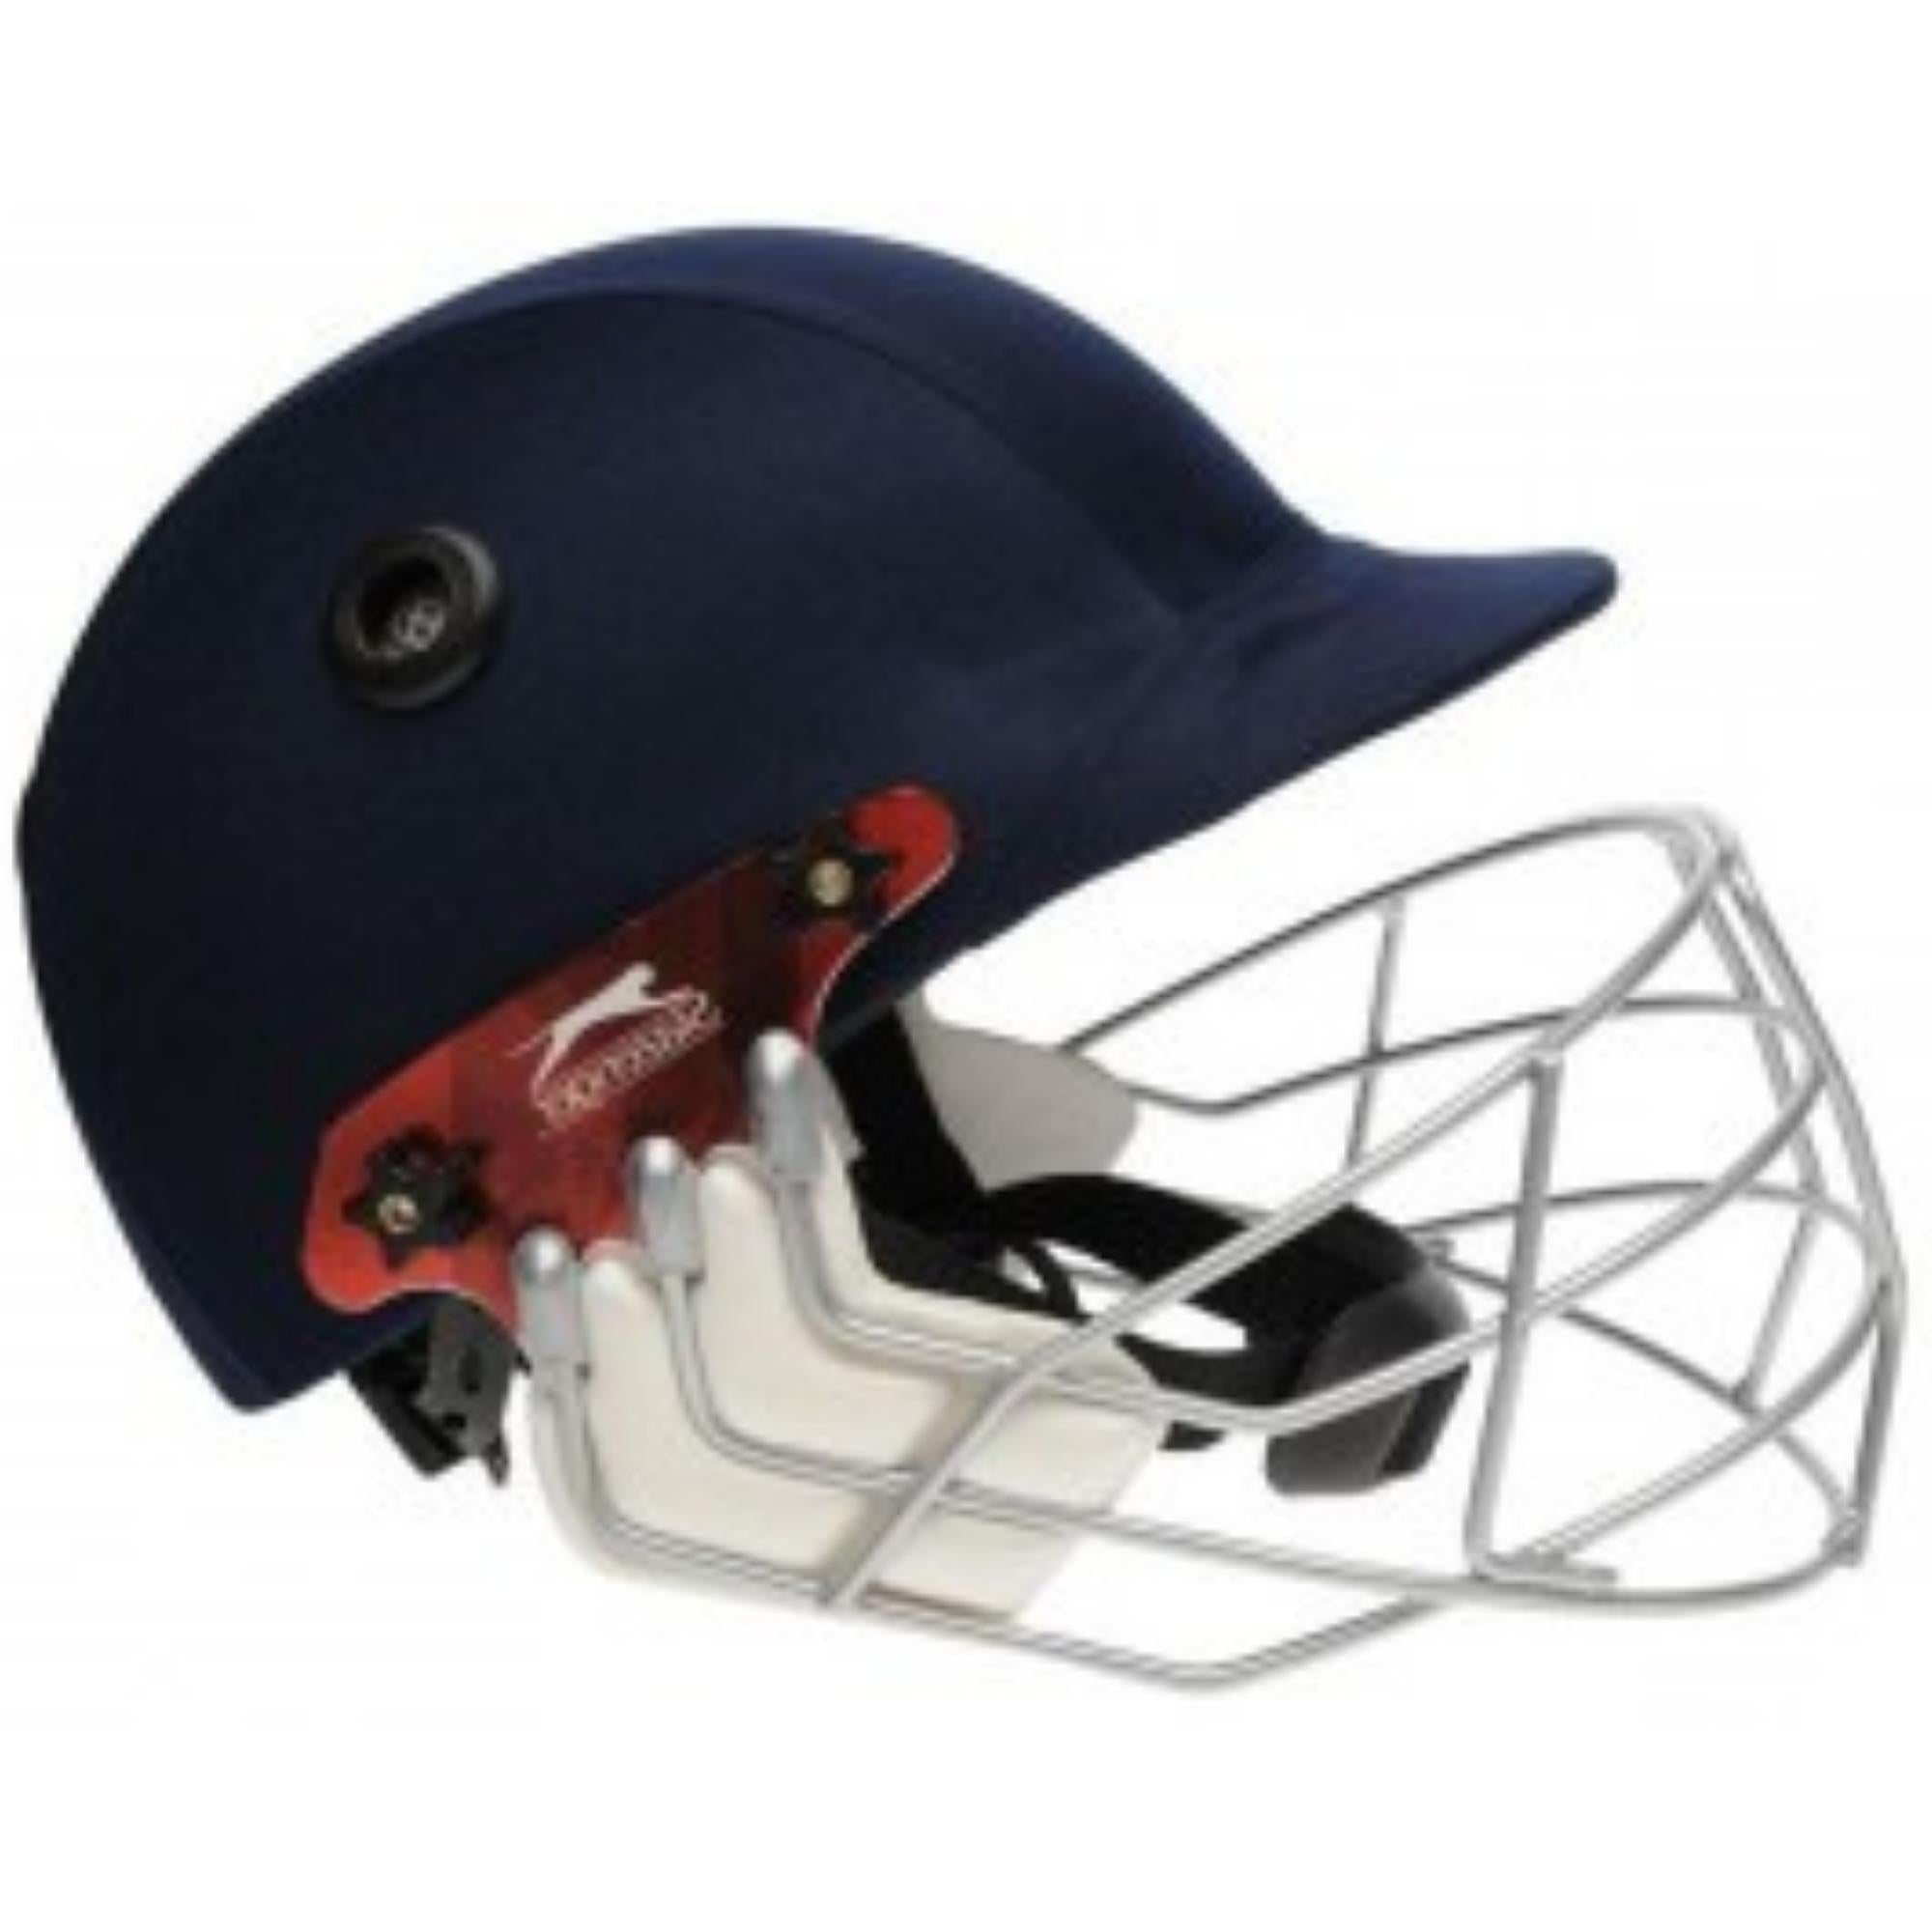 Slazenger Cricket Helmet